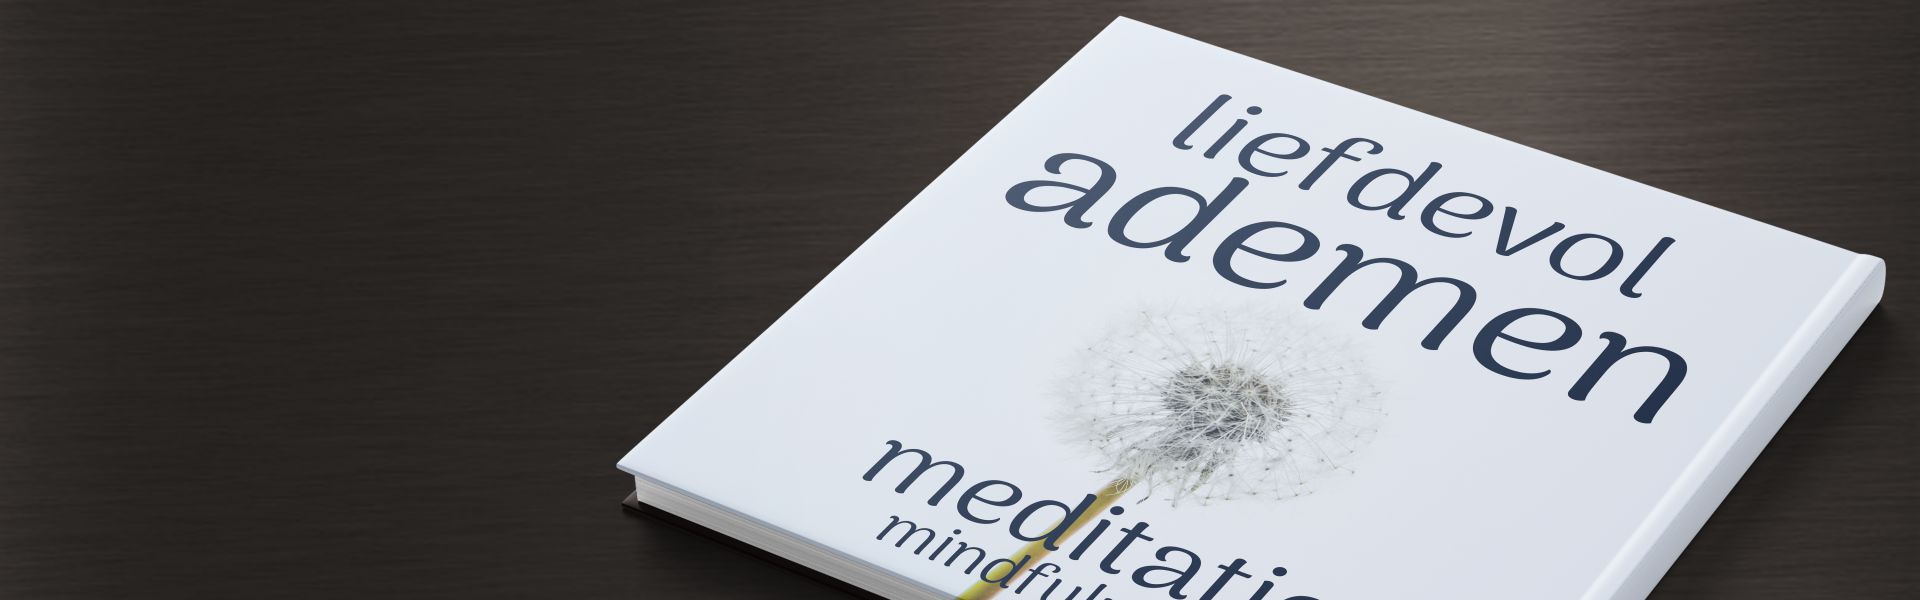 Liefdevol ademen: mindfulness meditatie